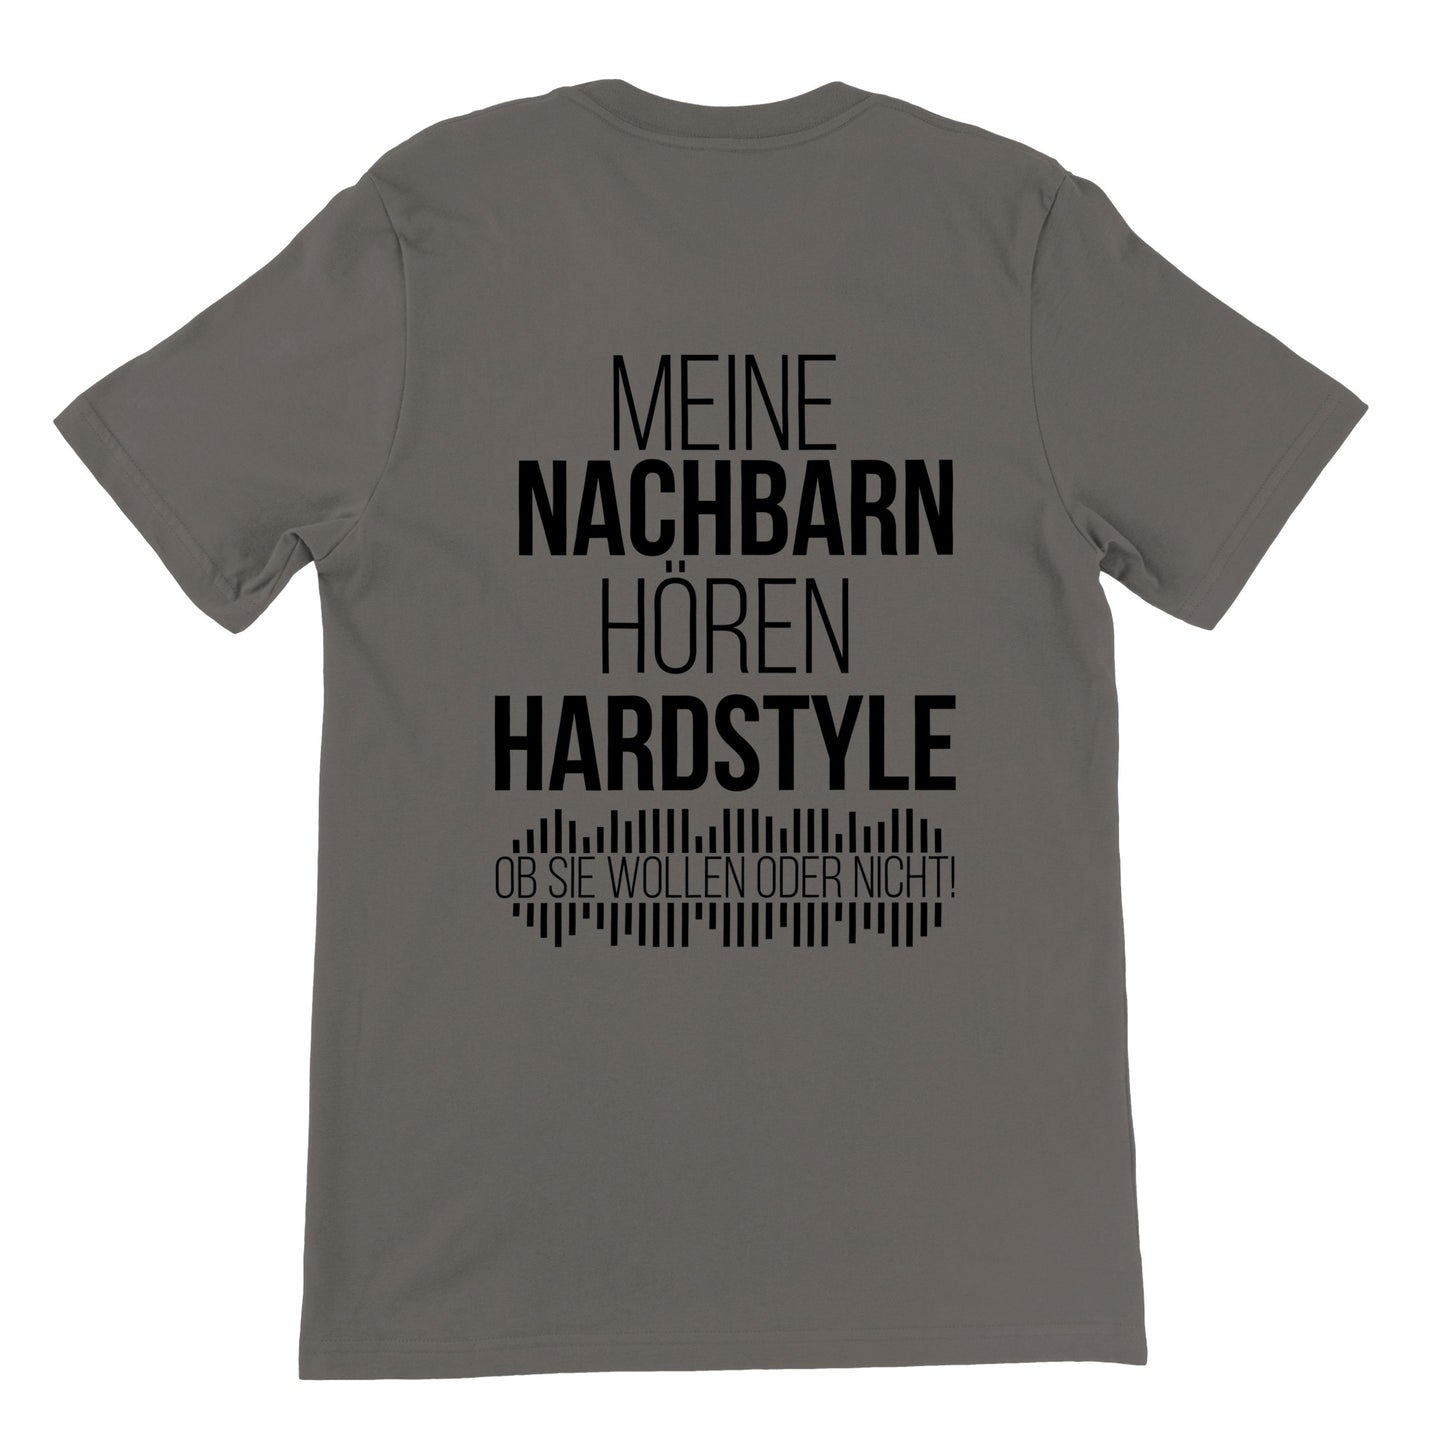 Meine Nachbarn hören Hardstyle - Premium Männer / Unisex T-Shirt mit Rundhalsausschnitt